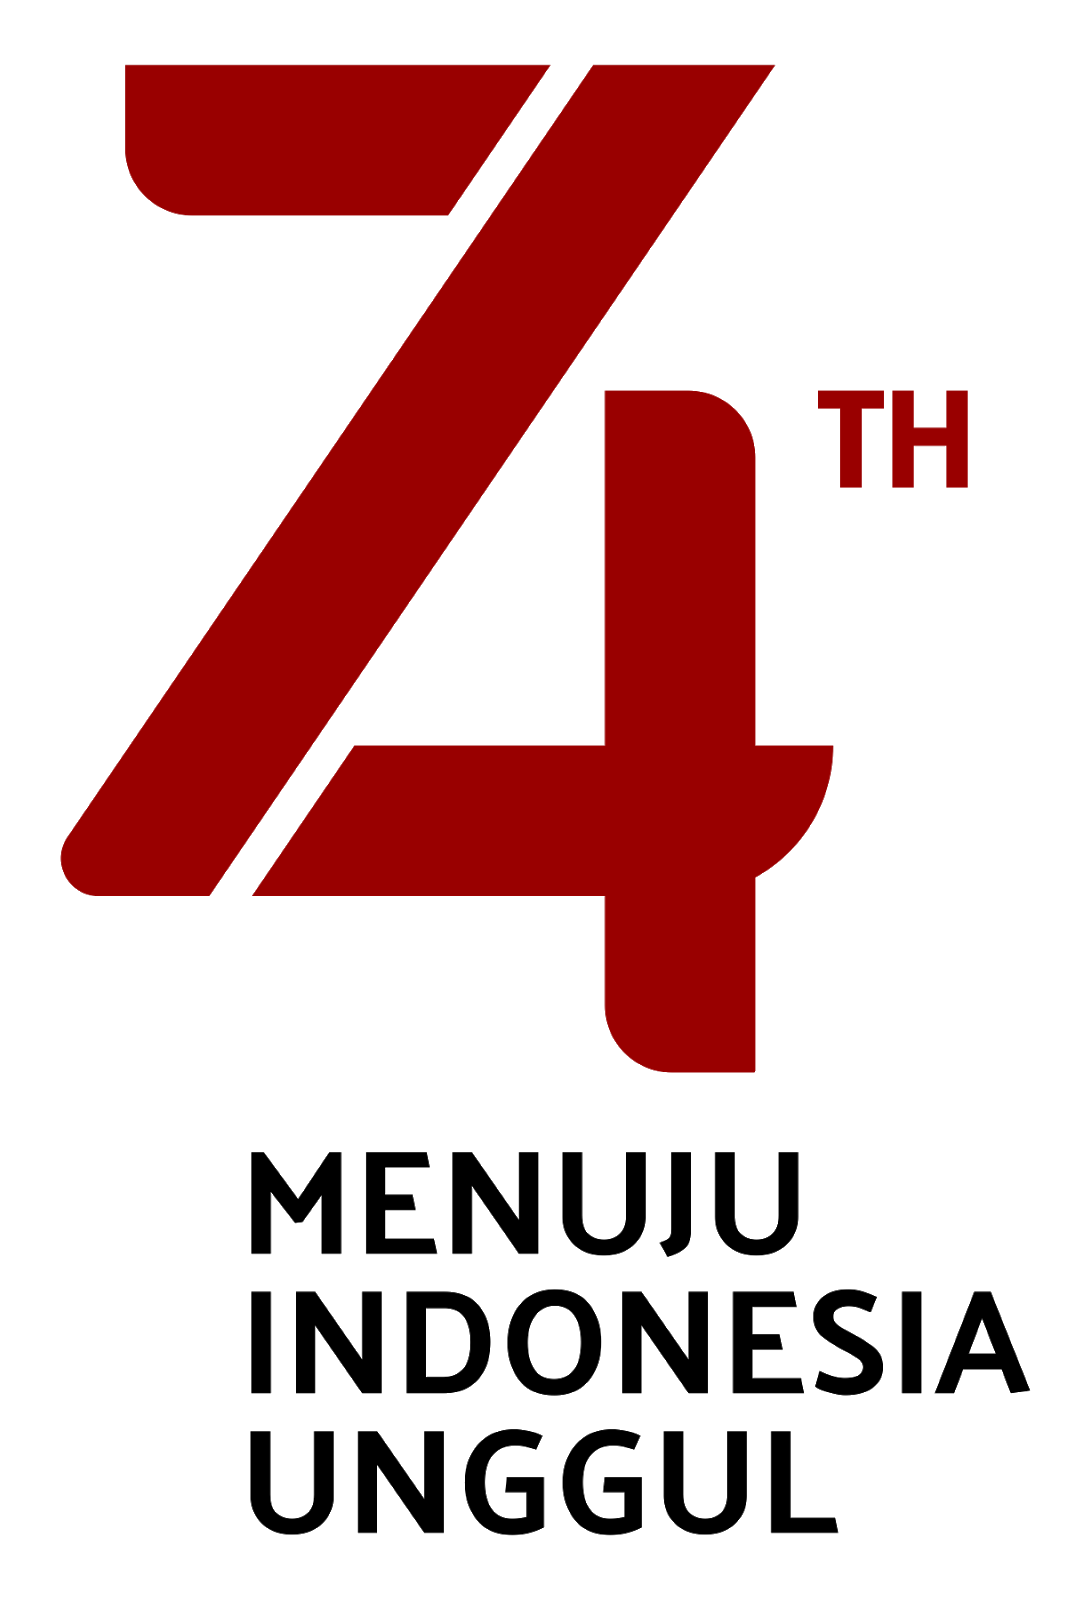 Logo Resmi Hut Ri 74 - KibrisPDR